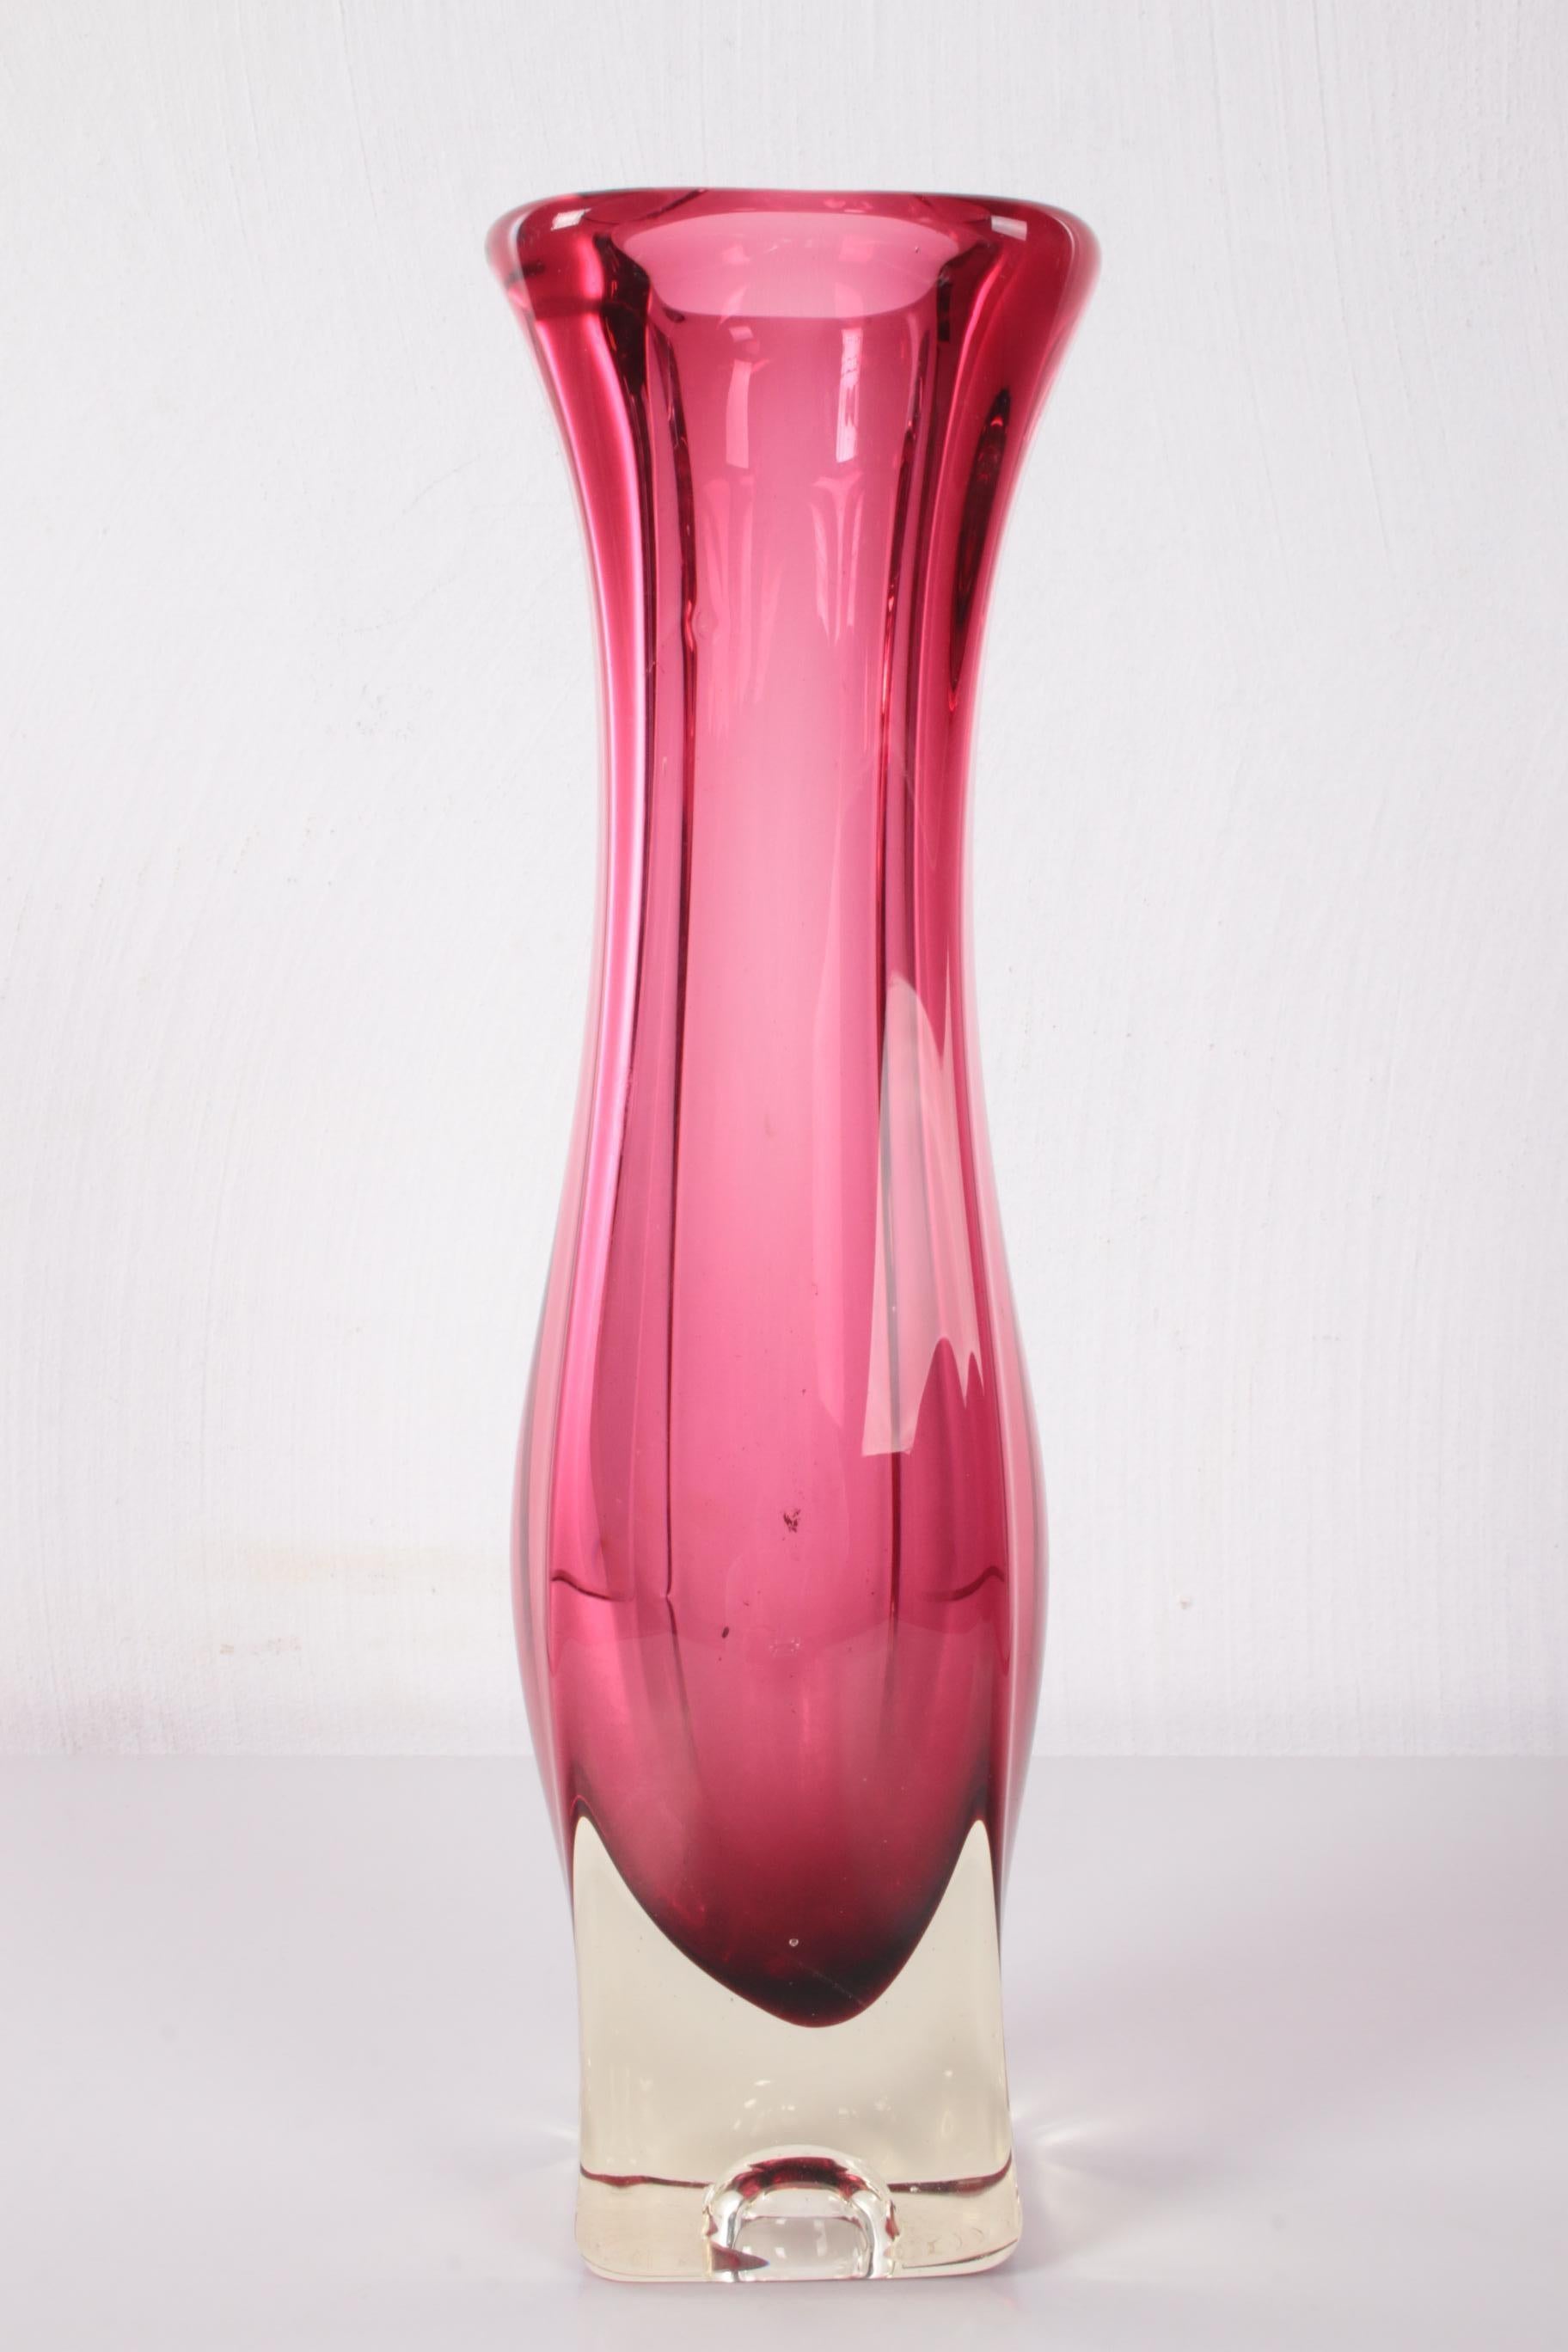 Vieux vase carré épais fabriqué dans les années 60


Vase en cristal rose.

Pièce artisanale fabriquée en Belgique dans les années 60.

Belle rose destinée à servir de vase, mais c'est aussi un si beau spécimen.